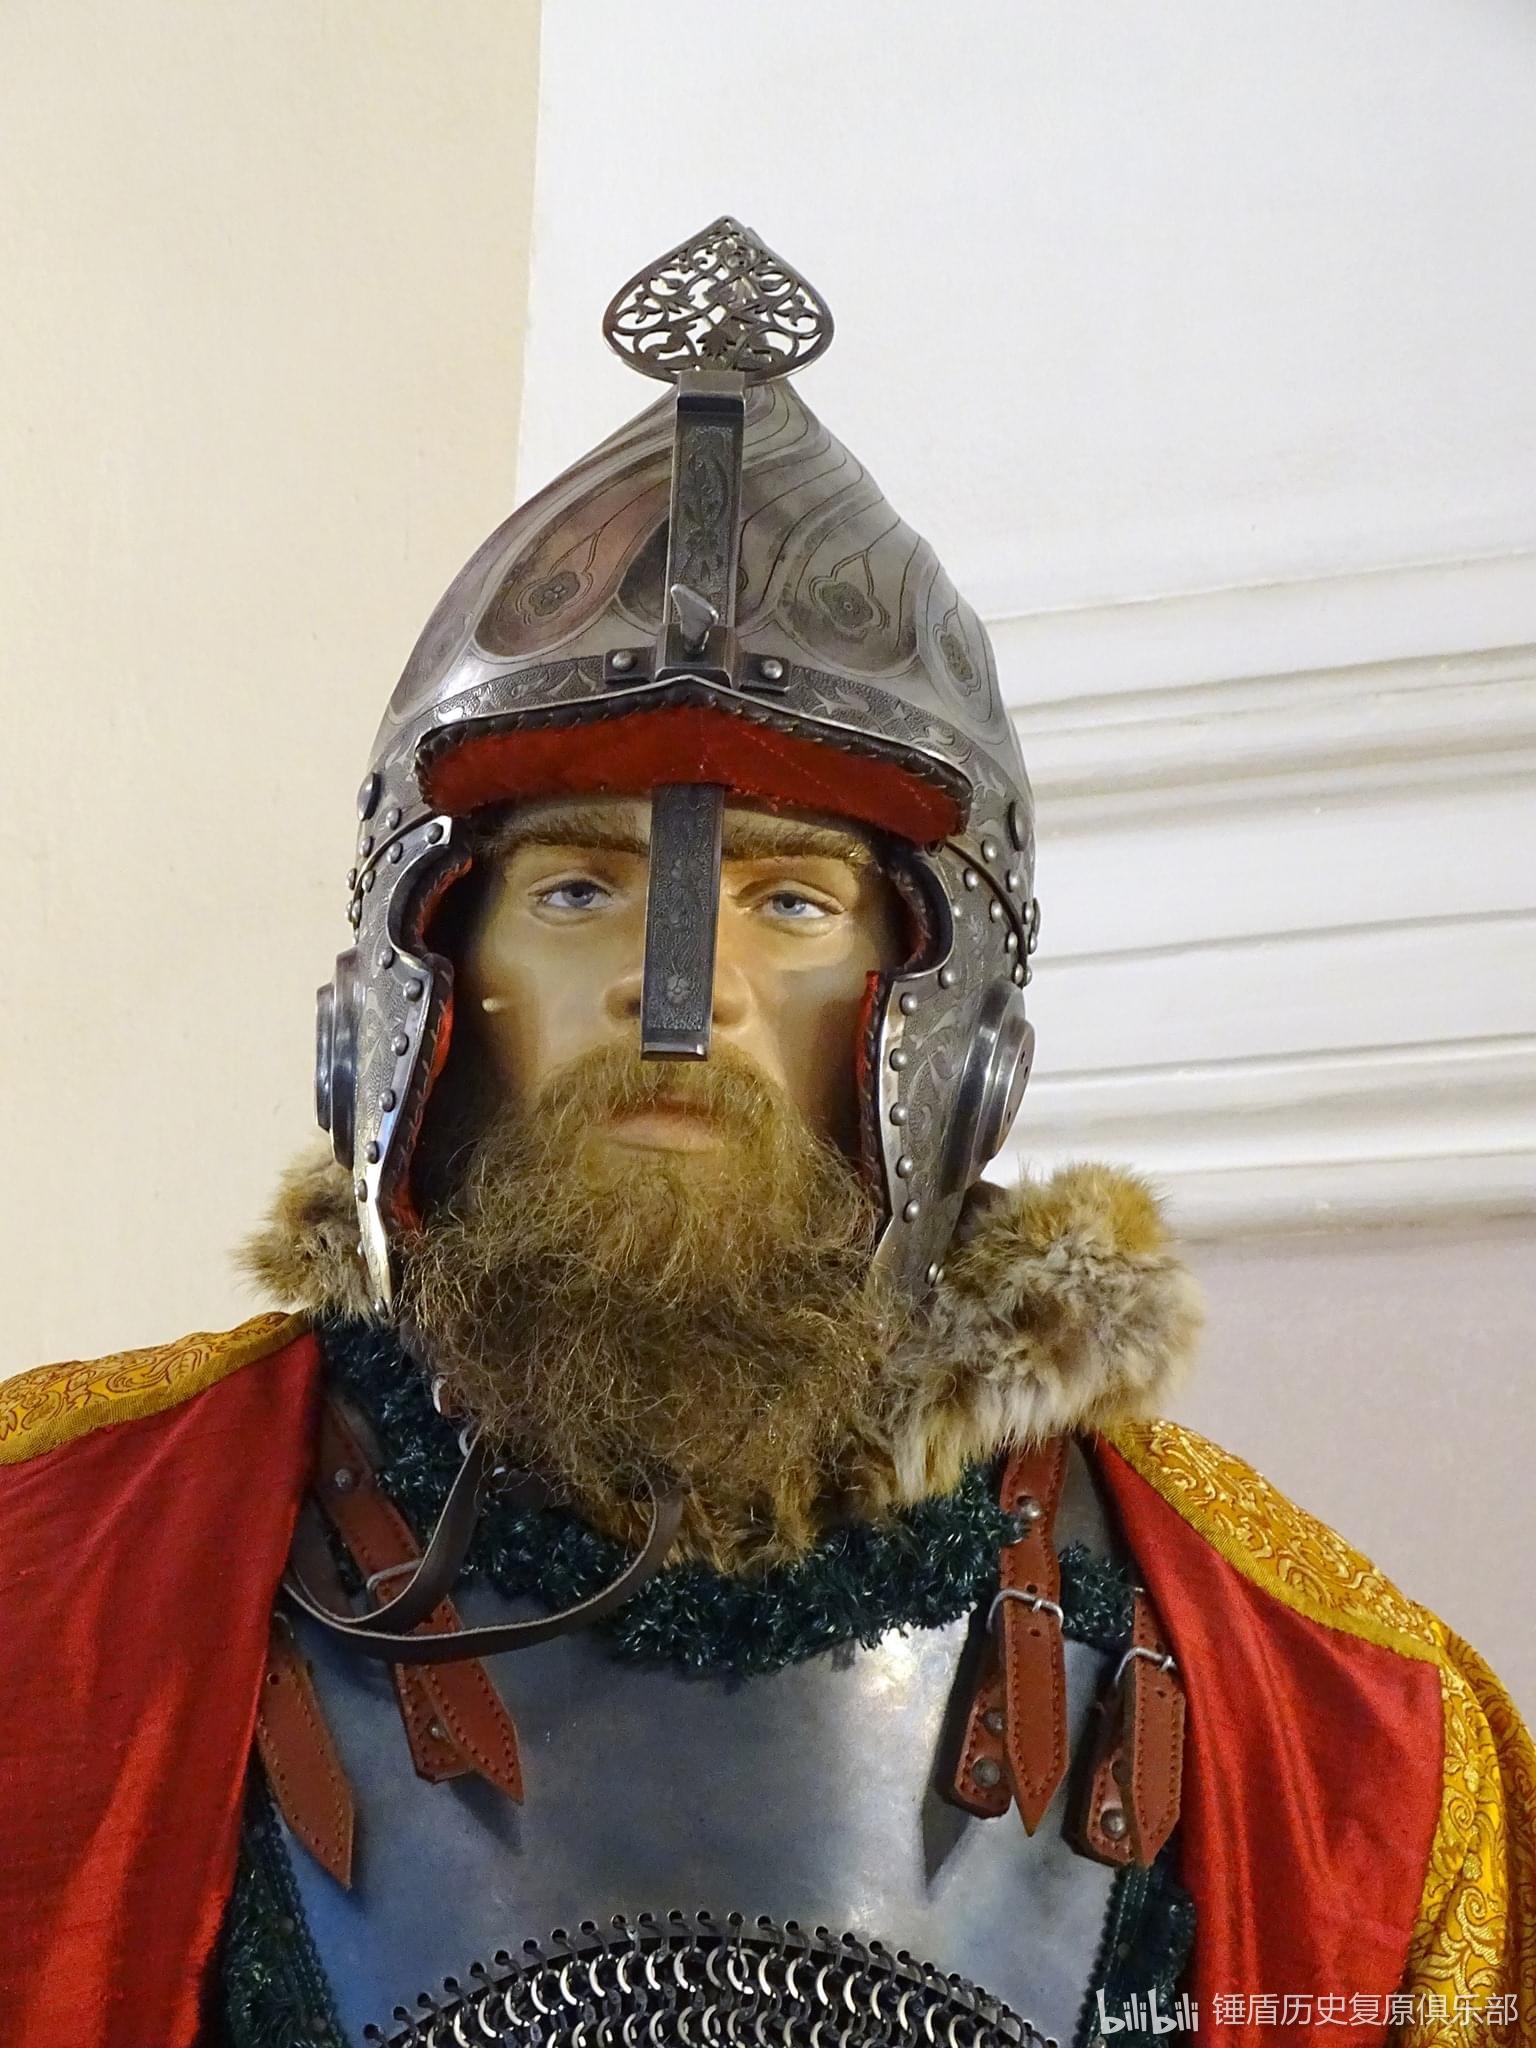 公元十六至十七世纪,莫斯科大公国波耶/波雅尔贵族骑兵装备复原展示